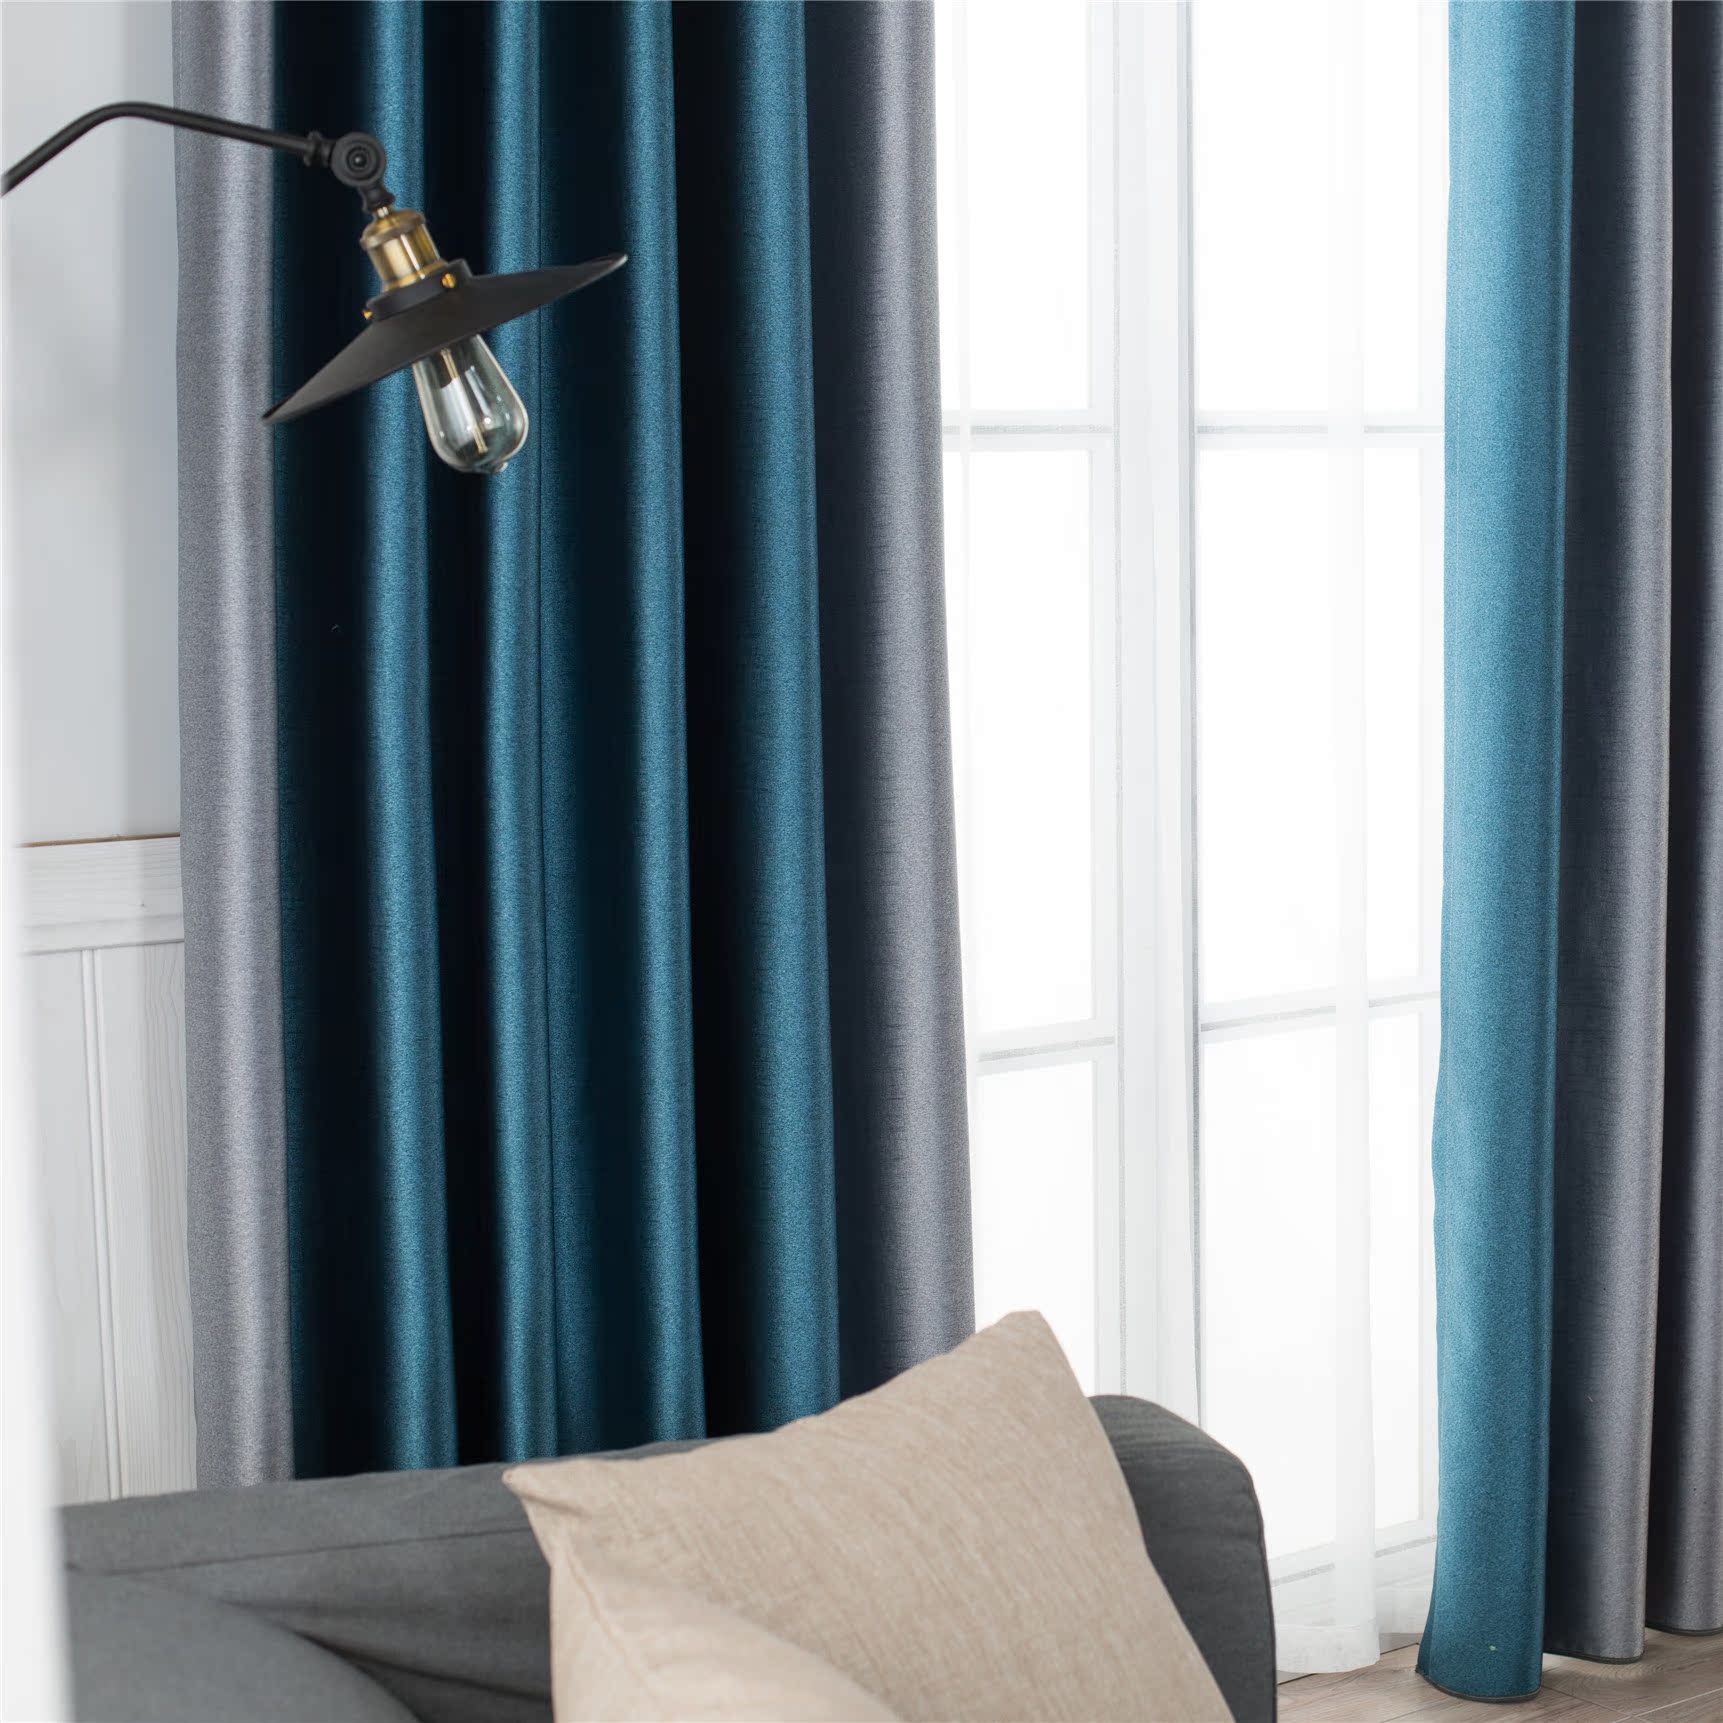 120平方美式风格客厅纯色窗帘装饰效果图_别墅设计图